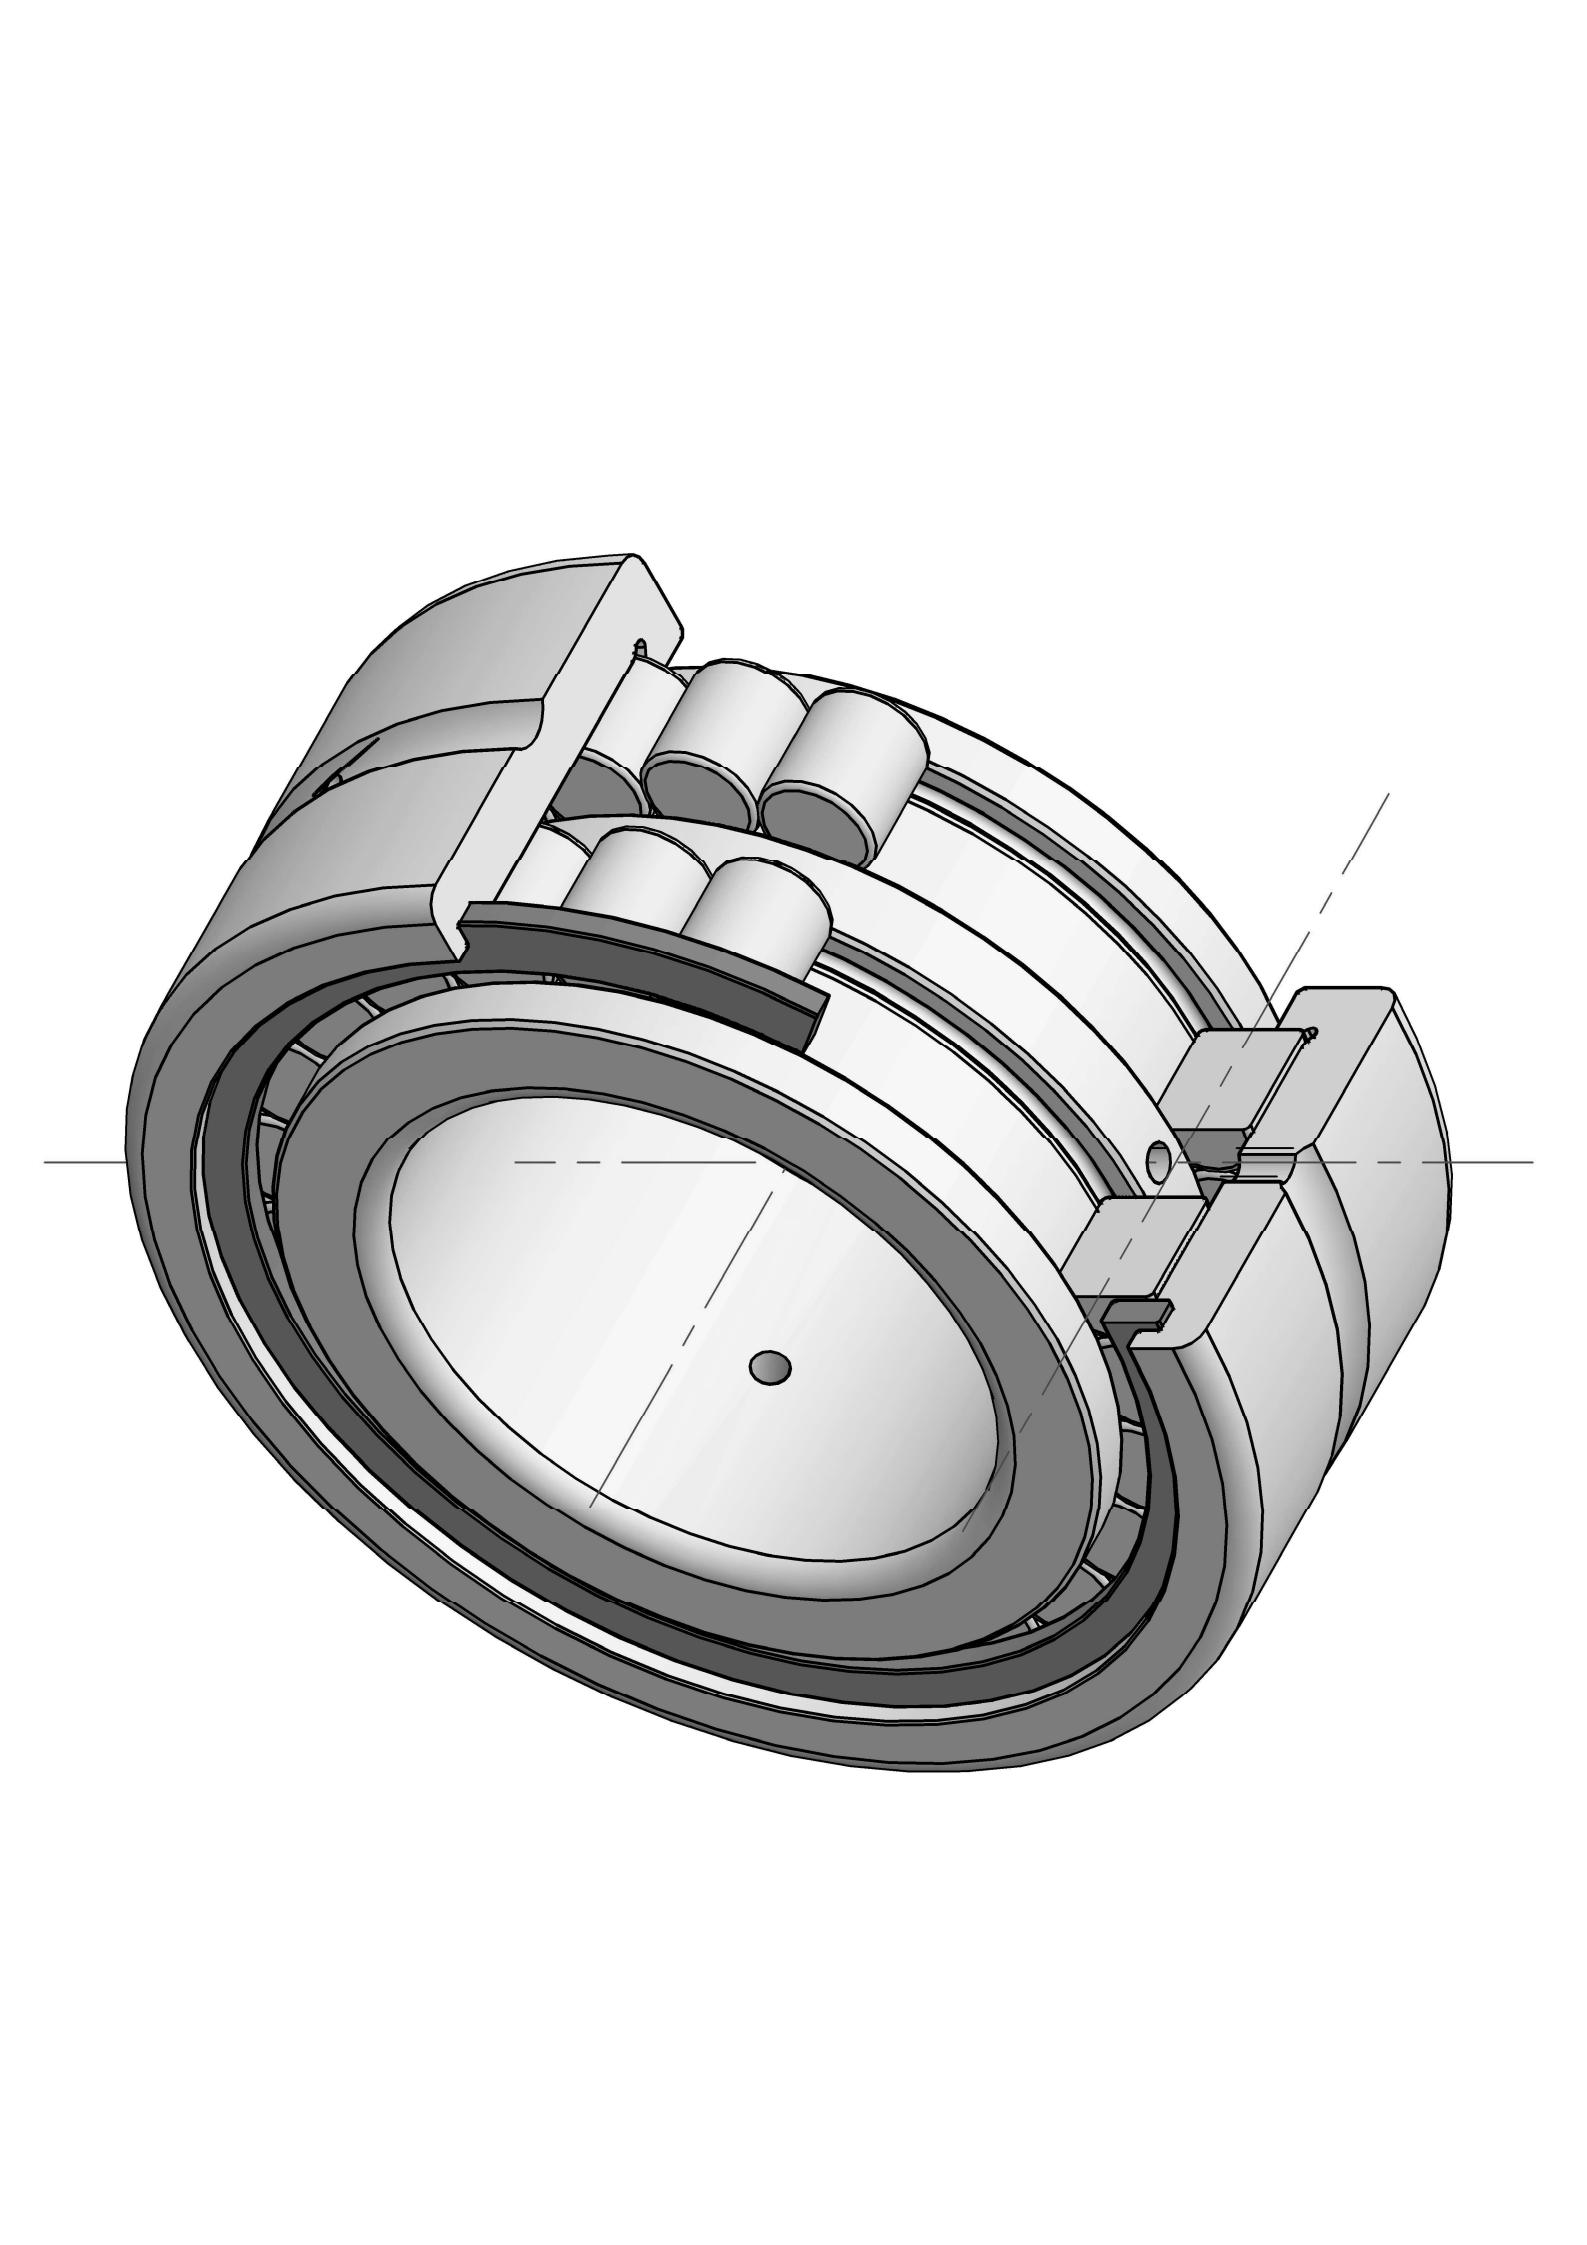 SL185020 Ob chav kab puv ntxiv cylindrical cov menyuam bearings